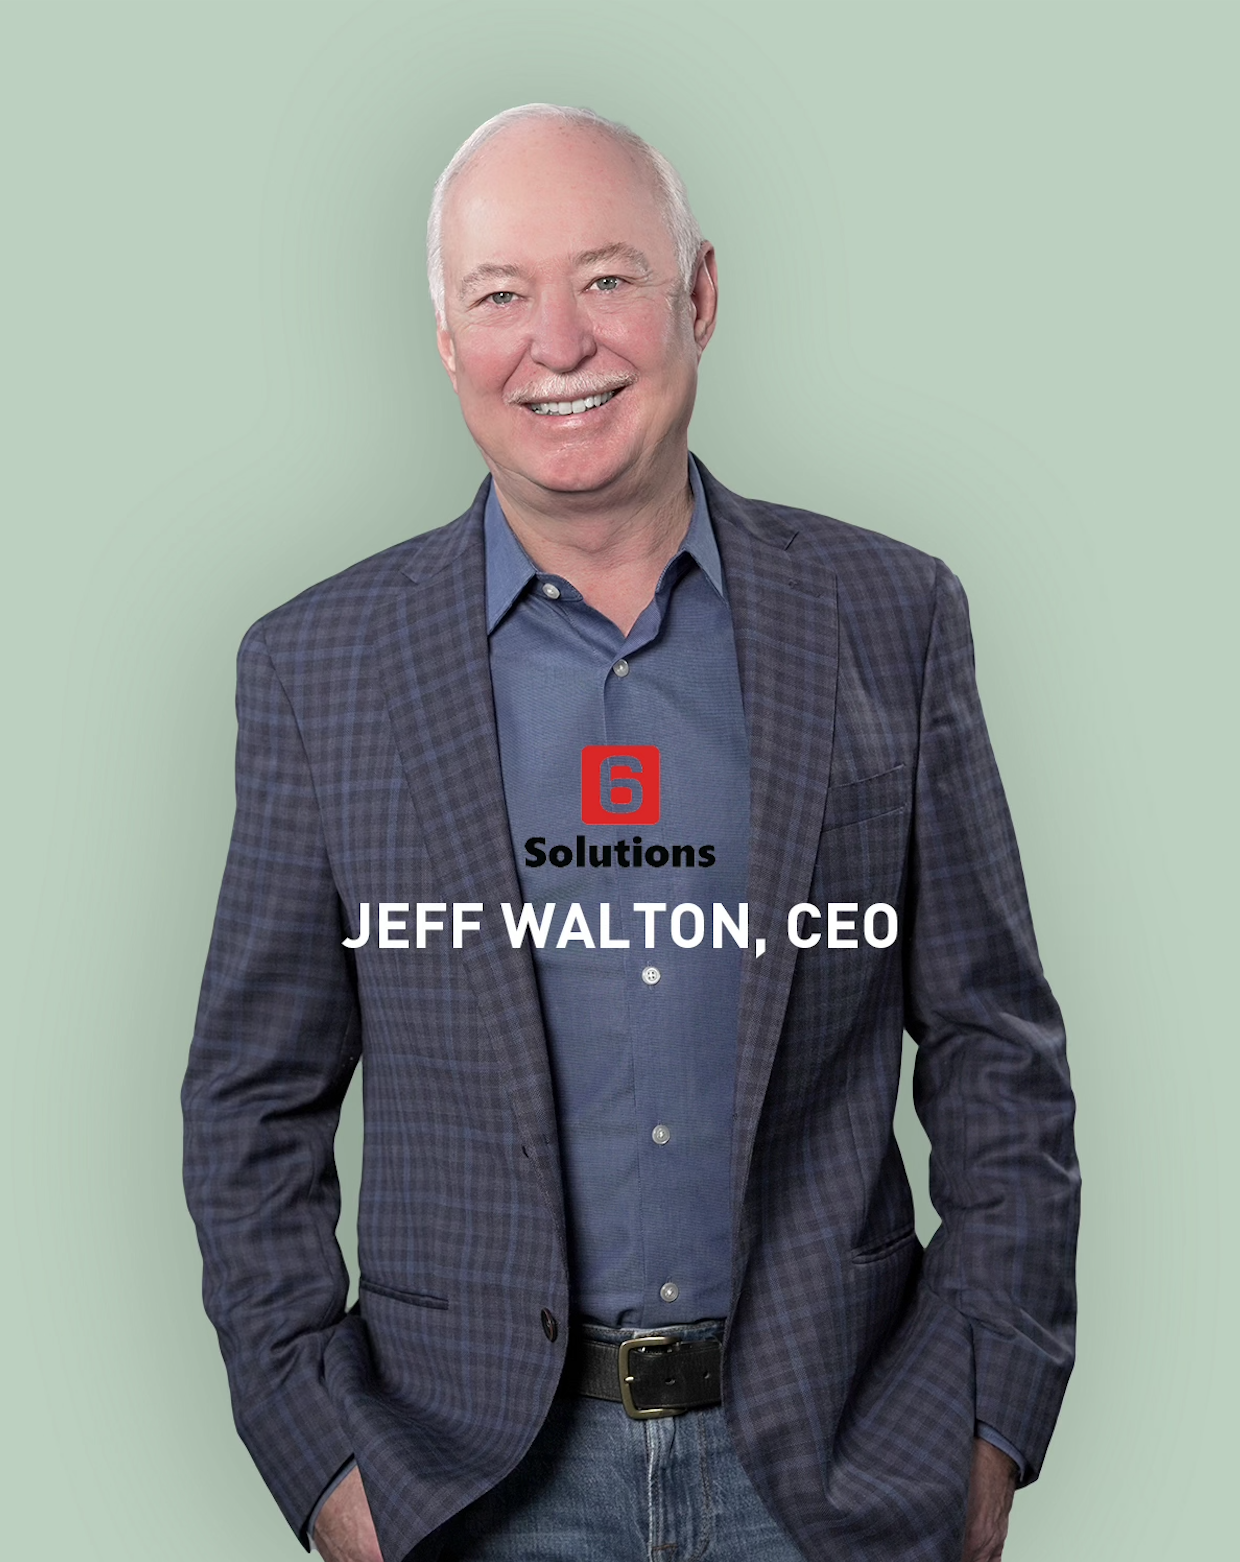 Jeff Walton, CEO of 6 Solutions